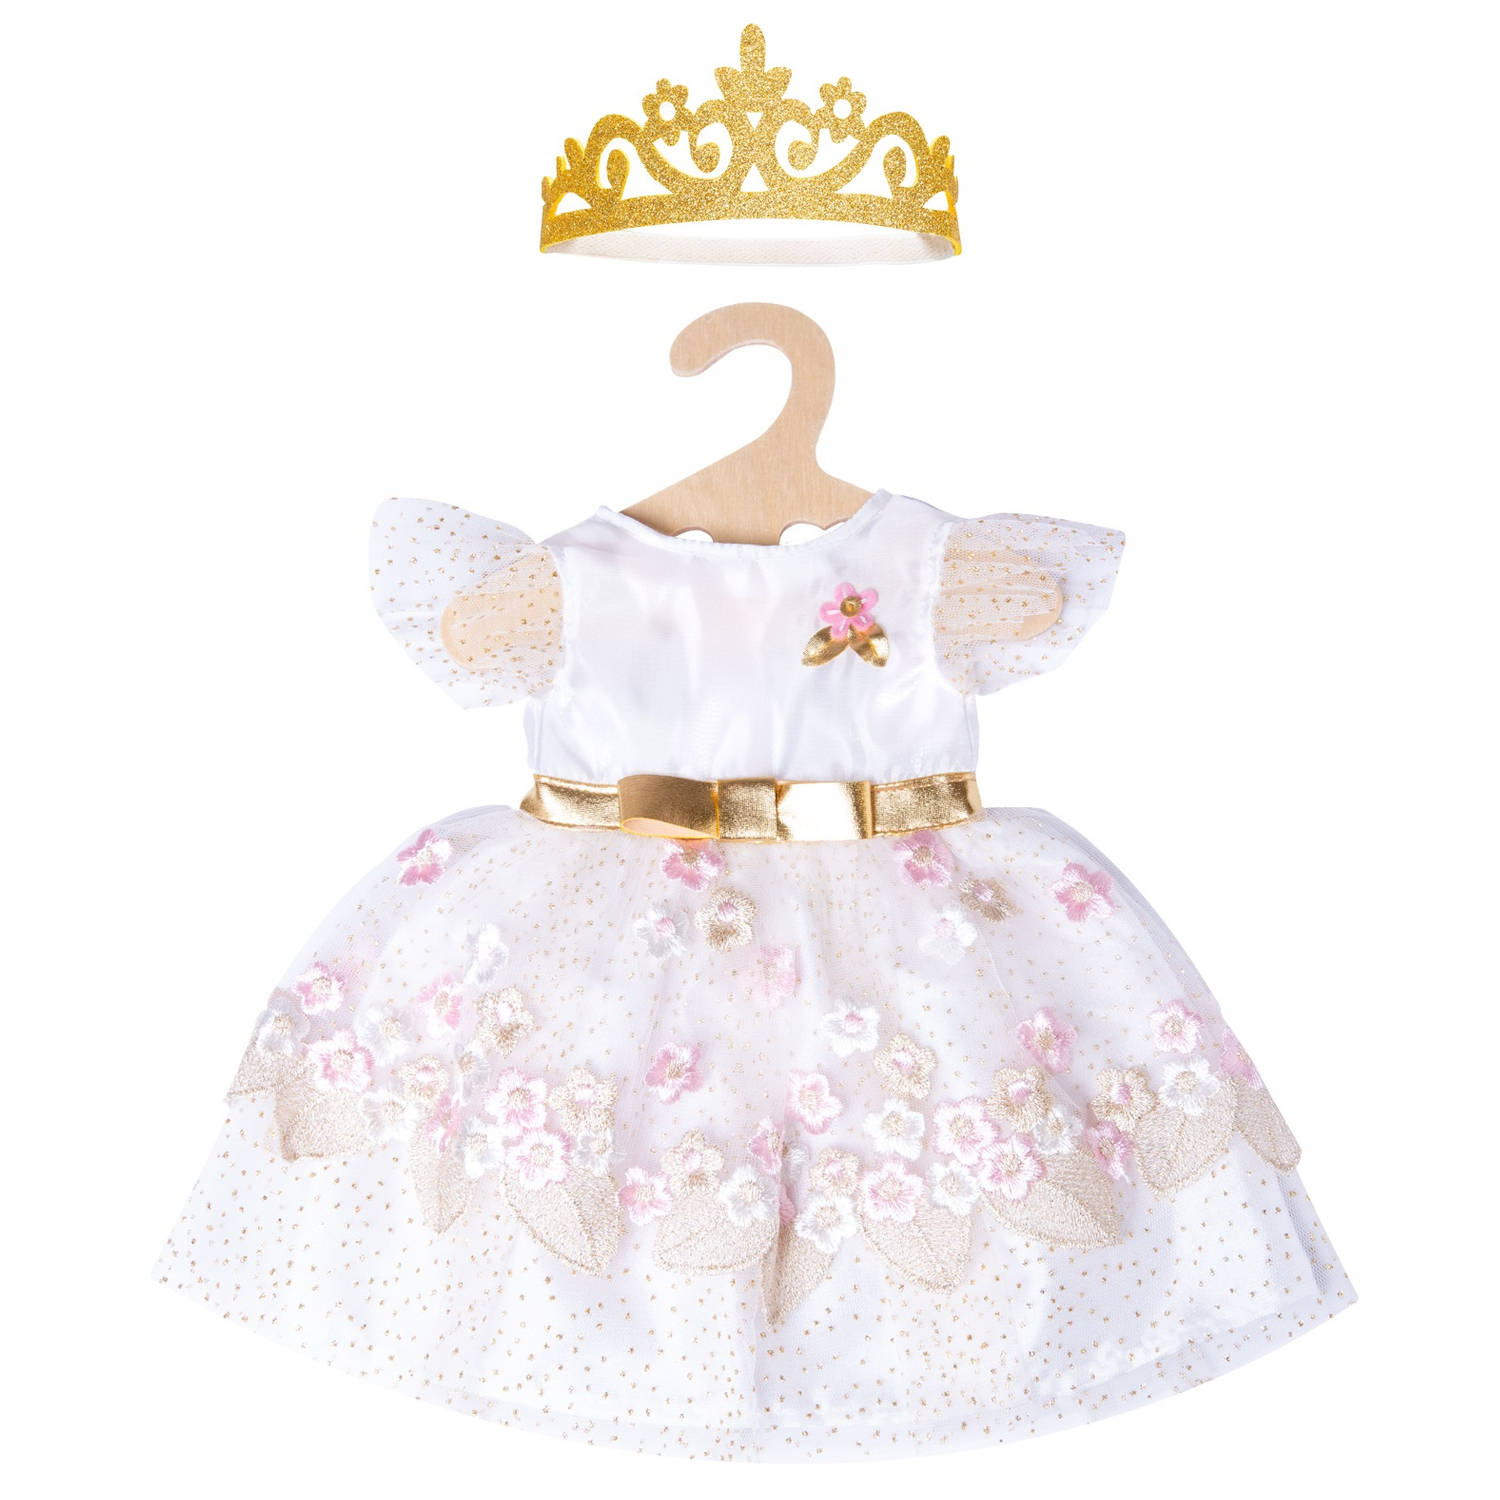 Heless babypoppenkleding prinsessenjurk 35-45 cm roze 2-delig